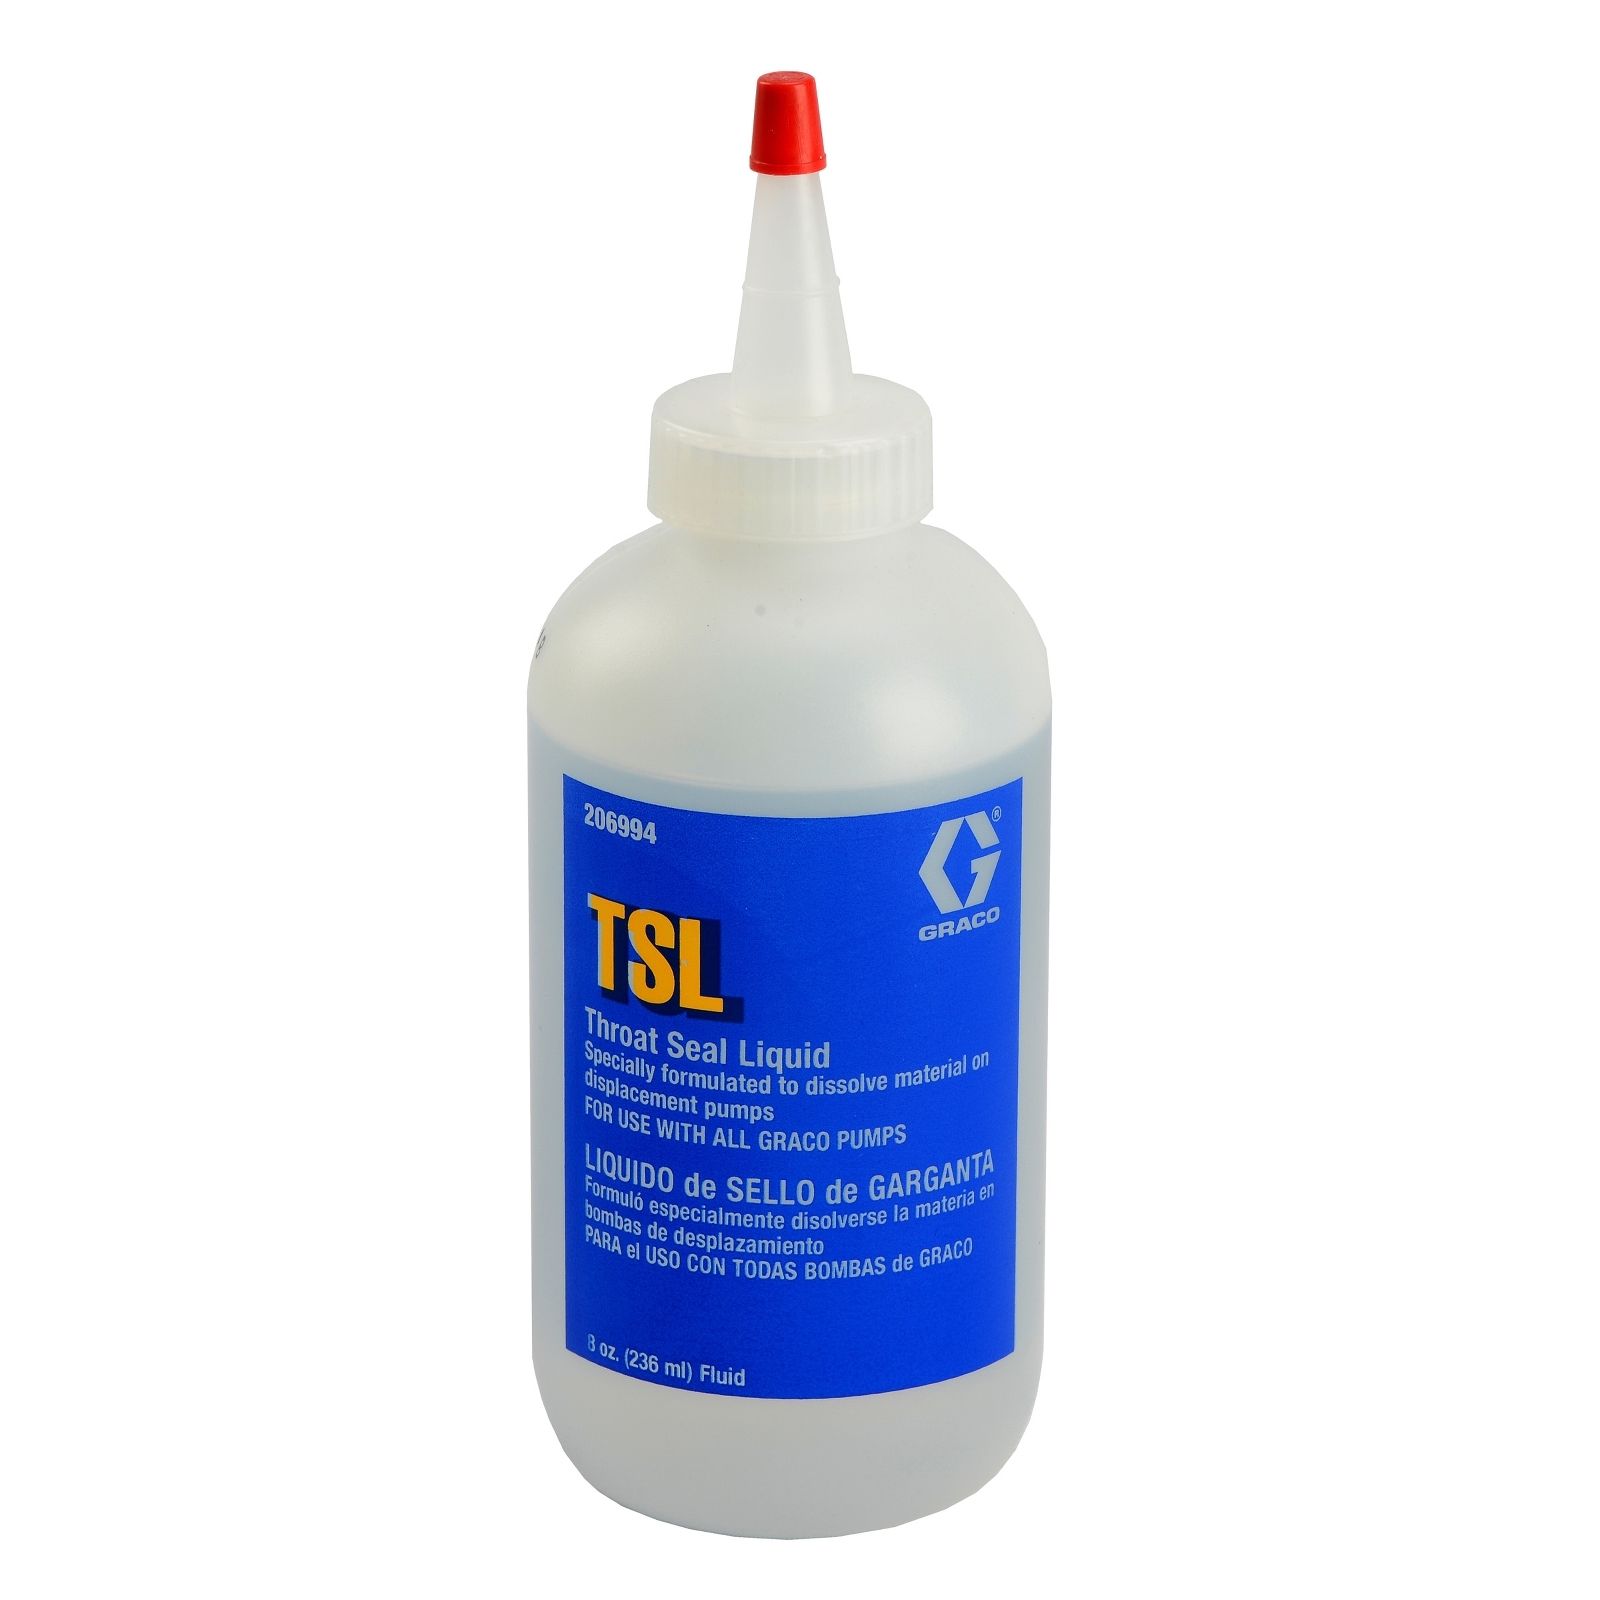 Buy TSL Throat Seal Liquid, 8 oz 206994 | Bolair Store